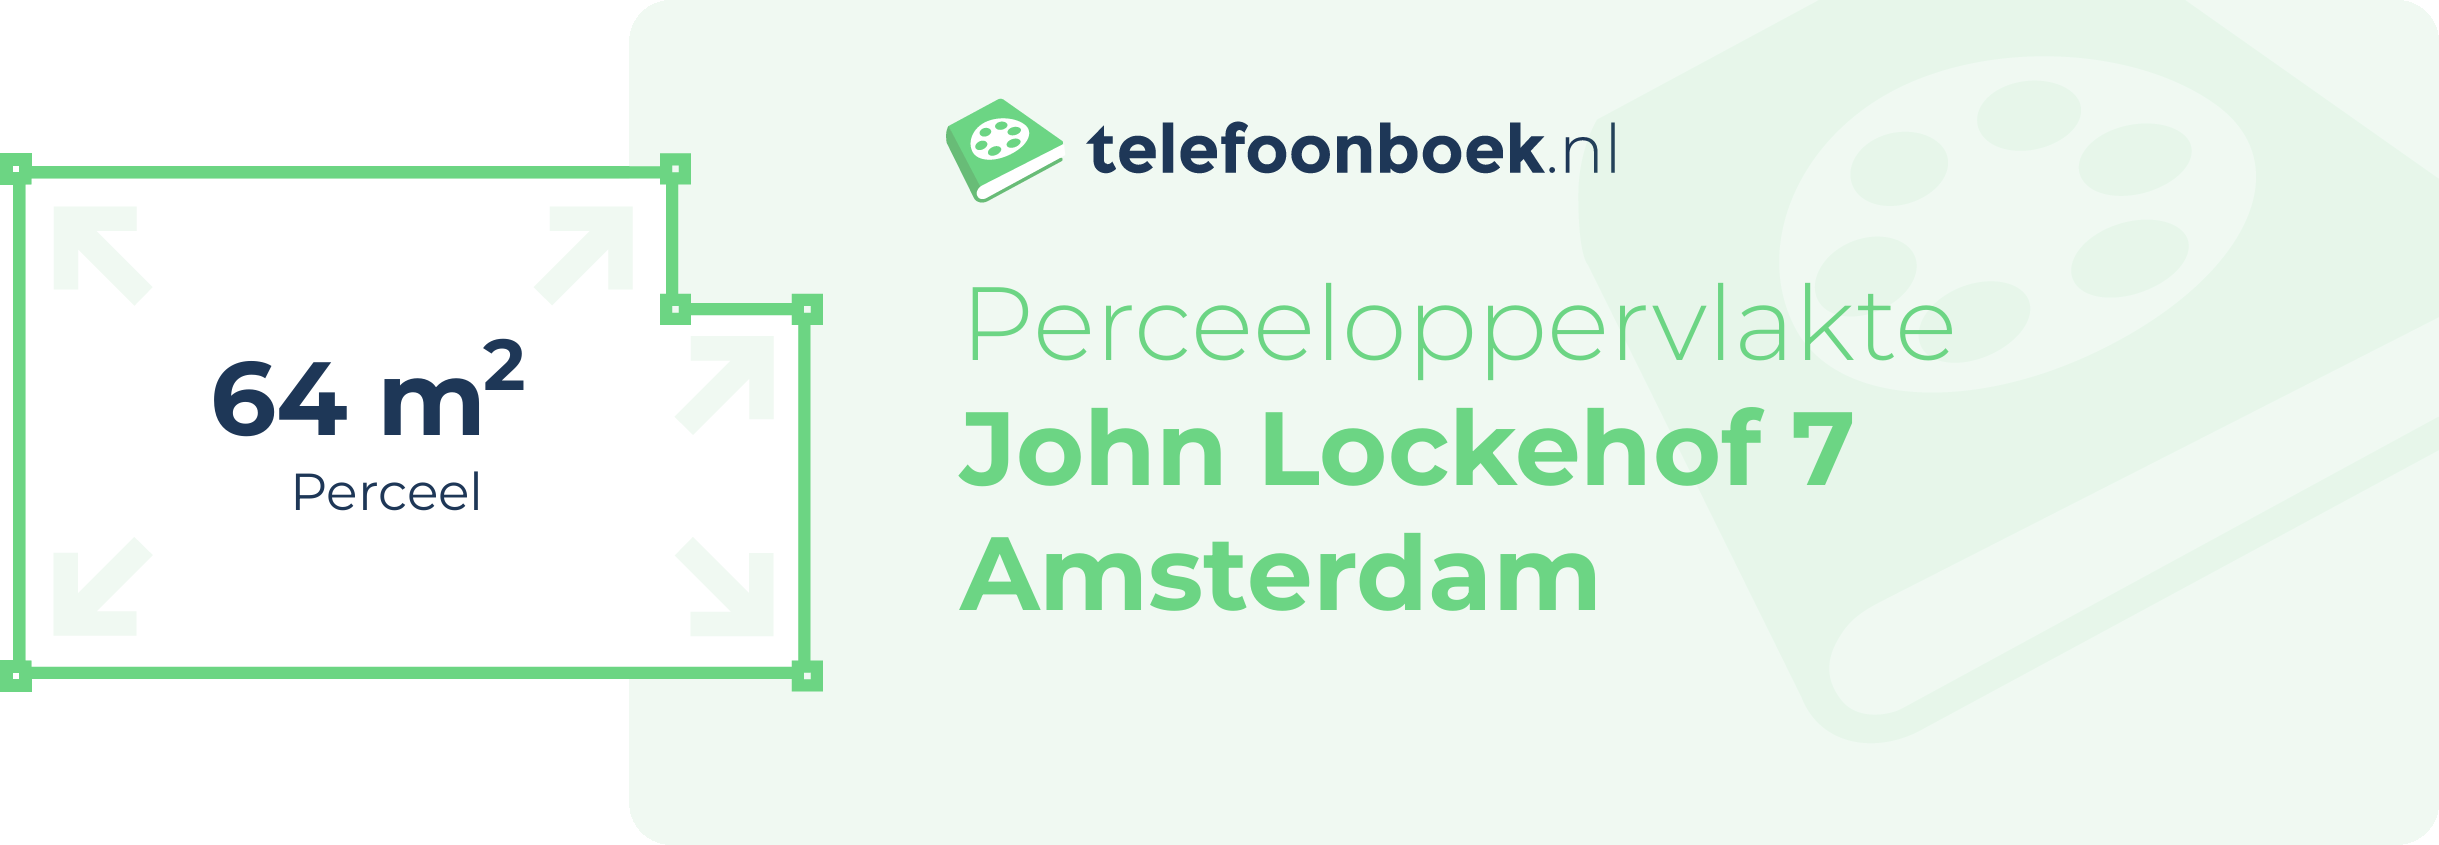 Perceeloppervlakte John Lockehof 7 Amsterdam